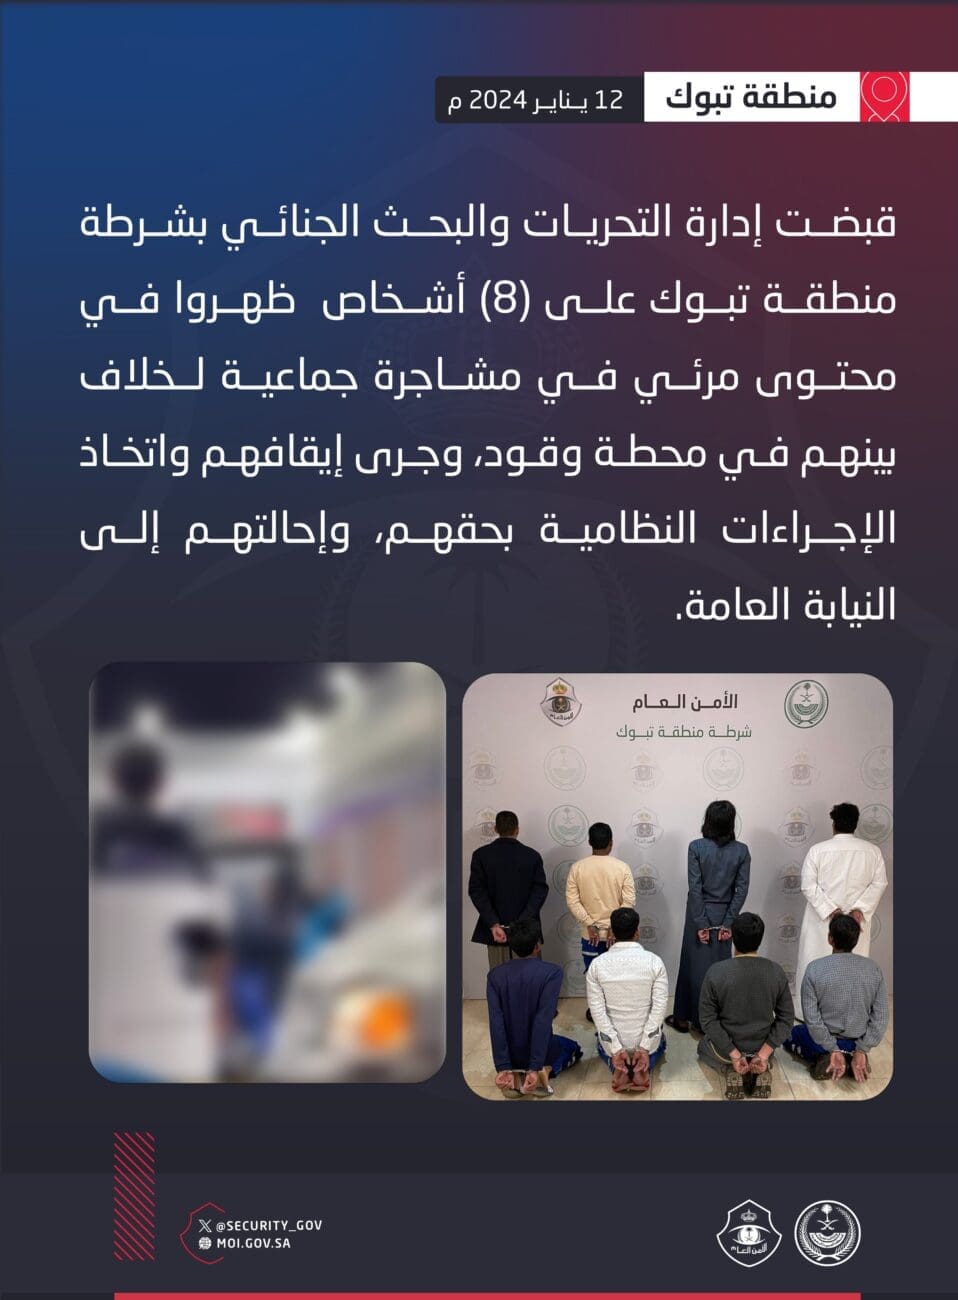 صورة توضح منشور الأمن العام بإلقاء القبض على 8 أشخاص - مصدر الصورة صفحة الأمن العام عبر منصة إكس 